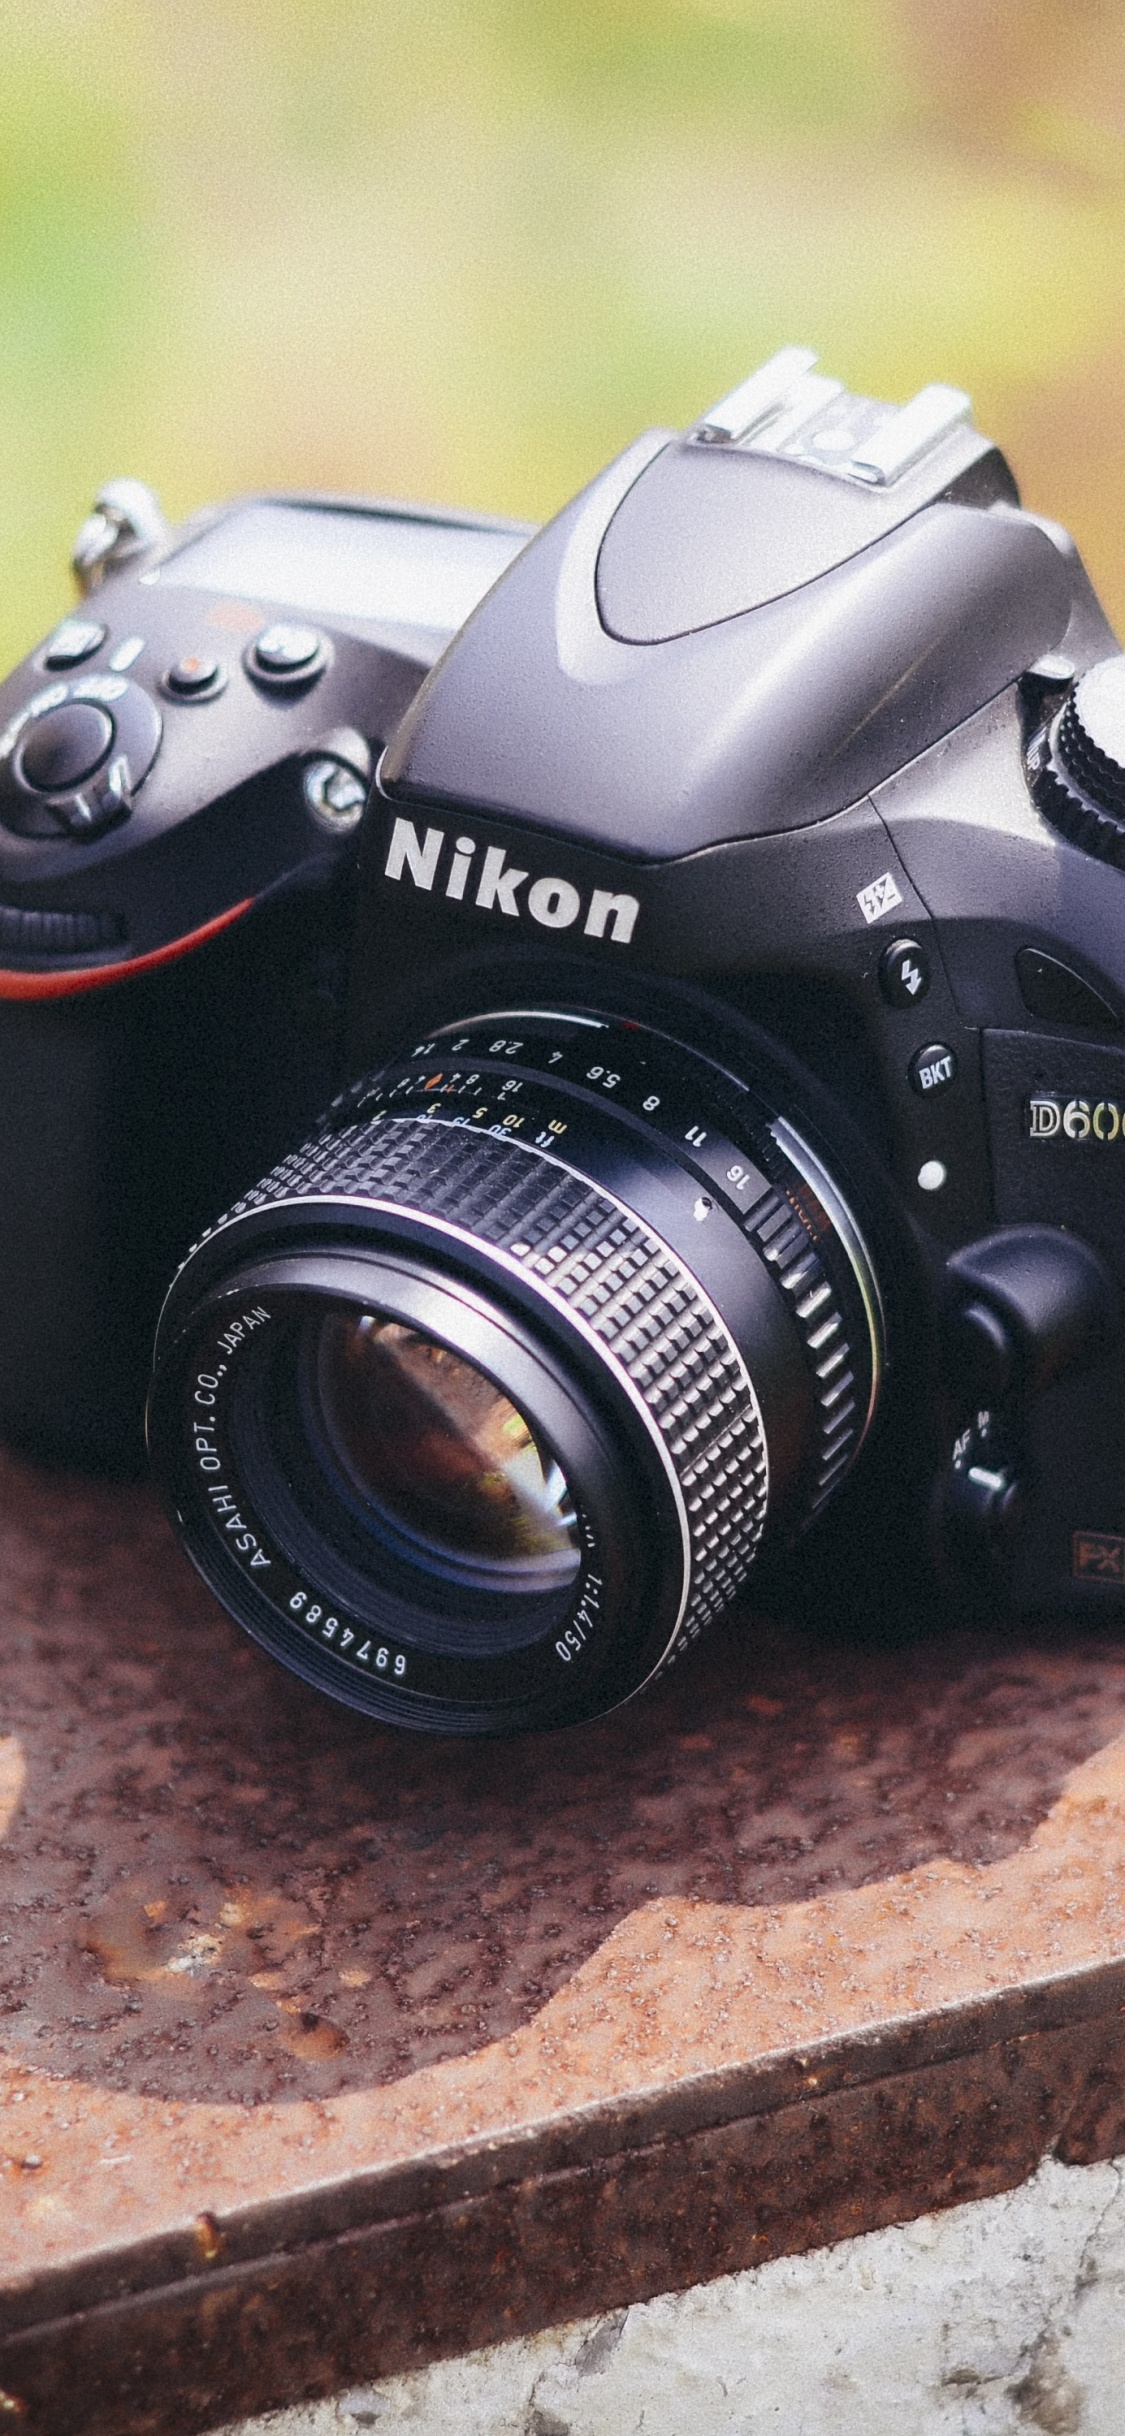 Schwarze Nikon Dslr Kamera Auf Brauner Betonoberfläche. Wallpaper in 1125x2436 Resolution